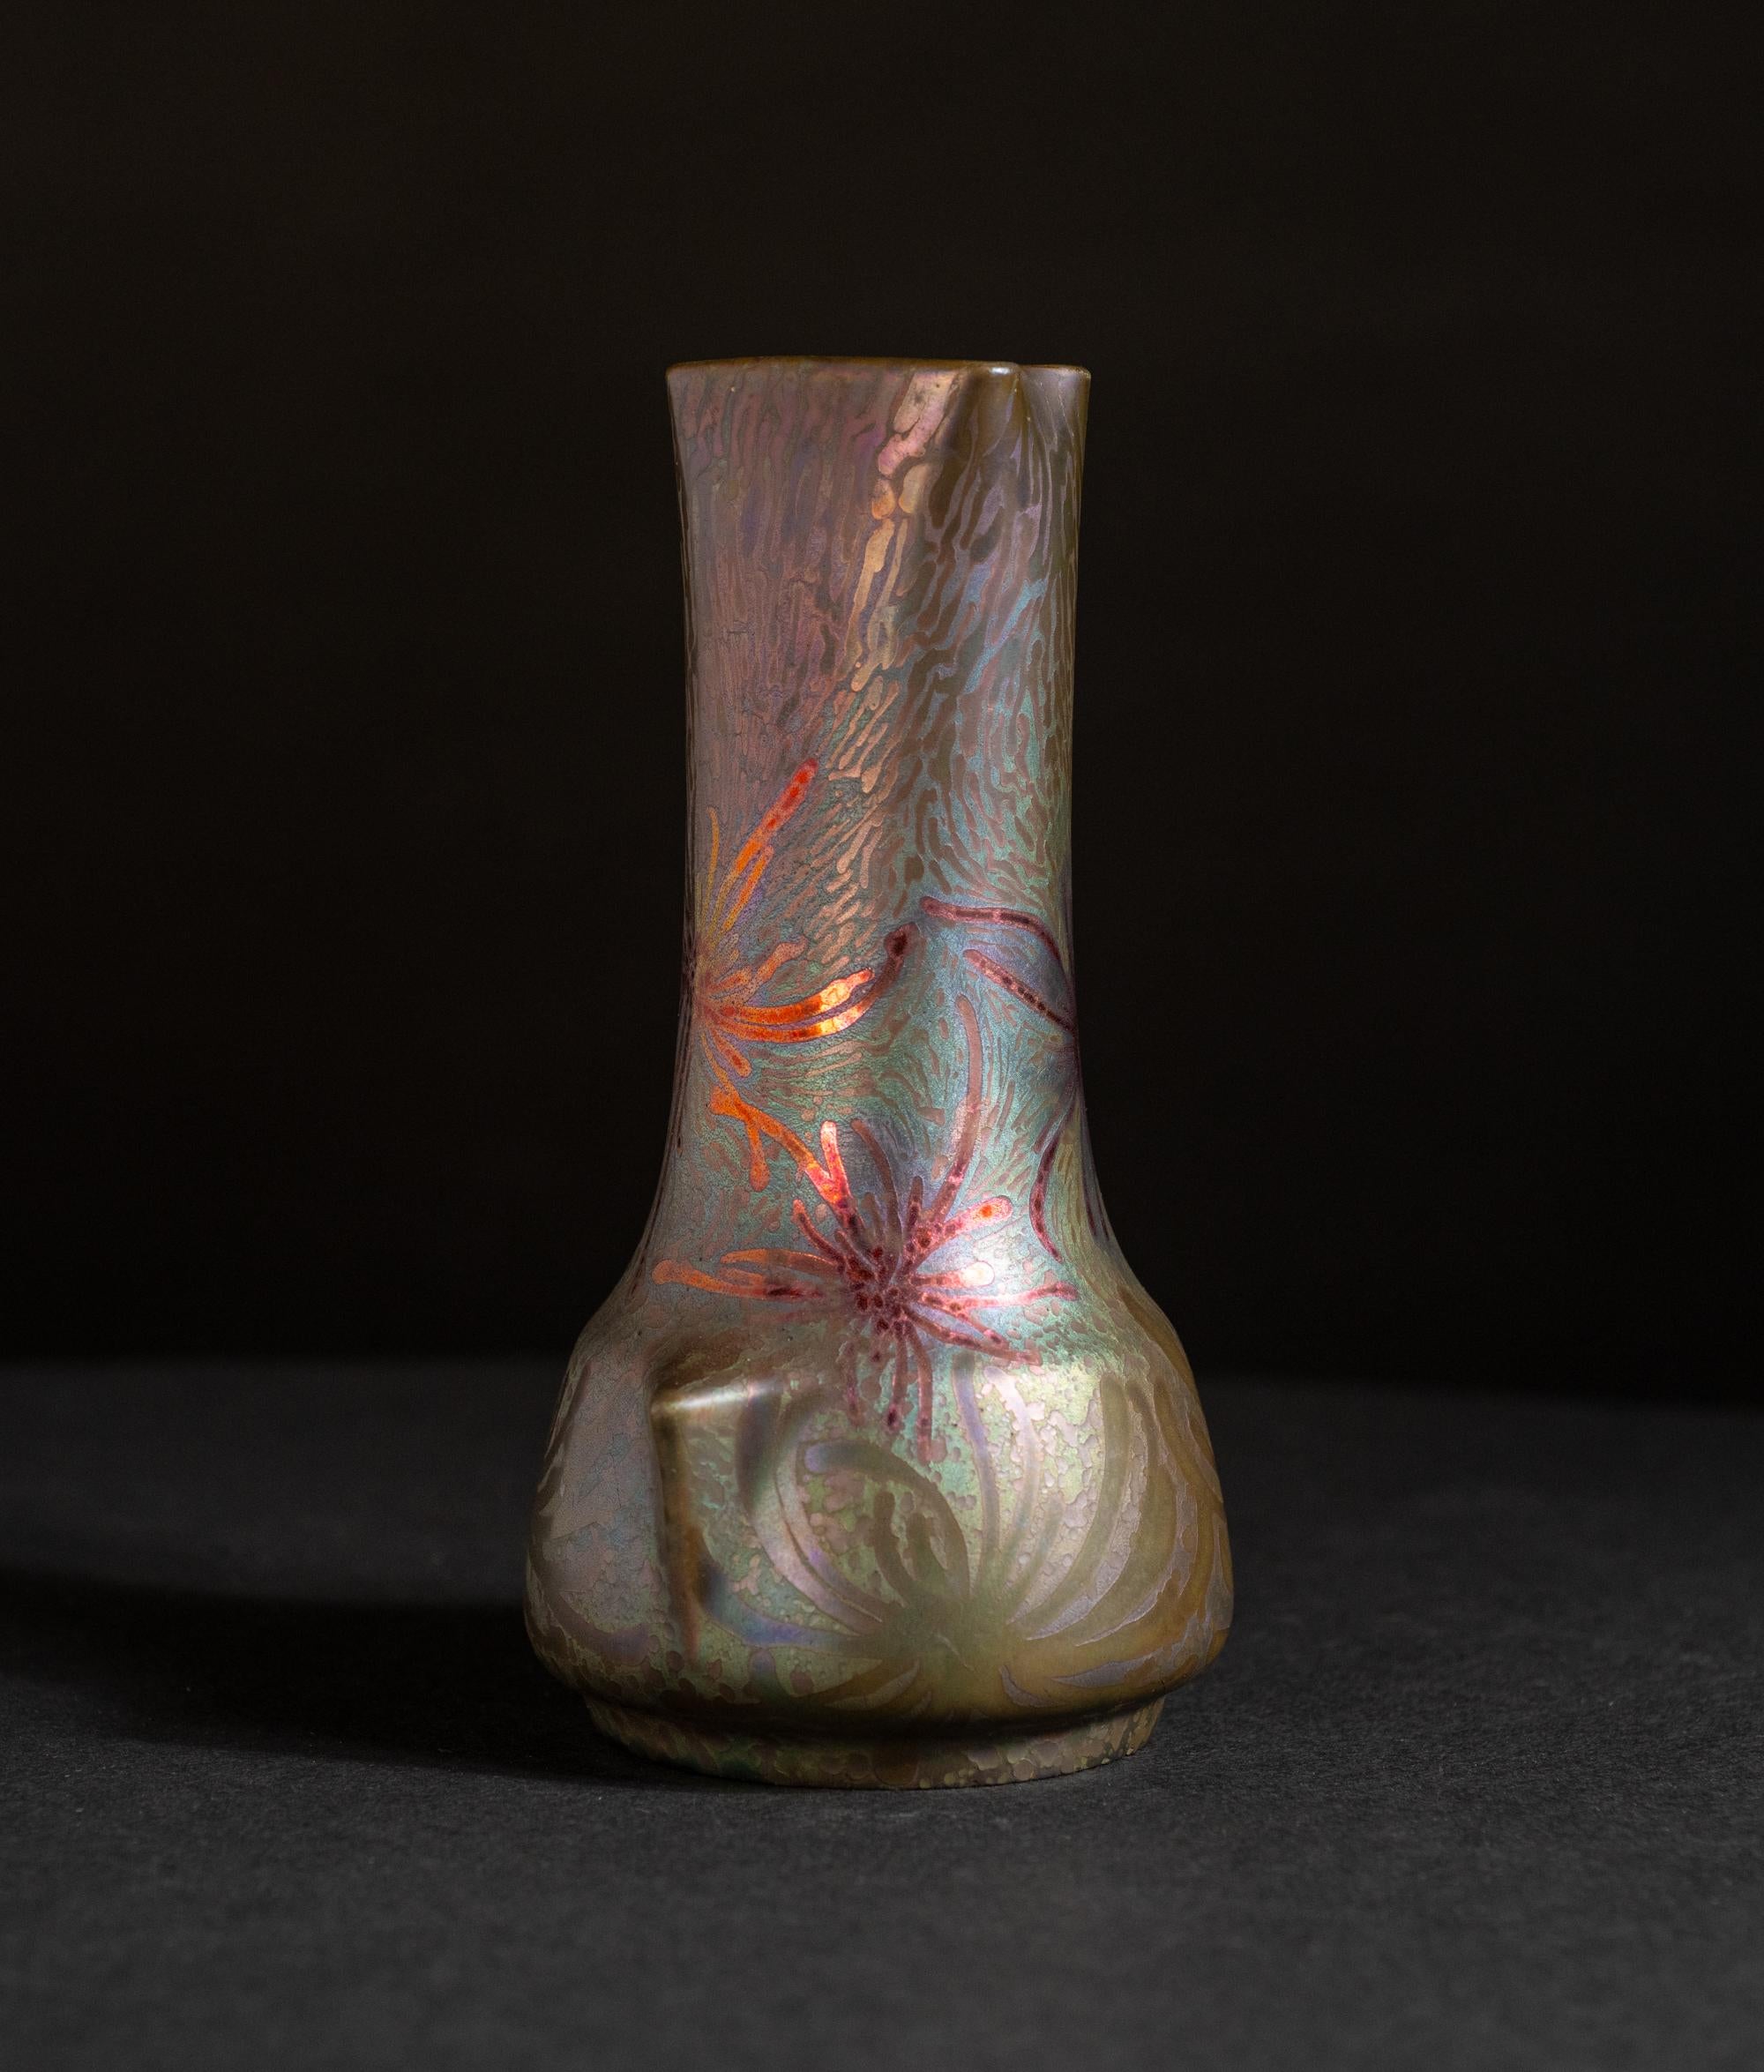 Die Begegnung mit den glasierten Keramiken von Massier ist eine Reise in die Farben der Säure, eine Erkundung, die zum Nachdenken anregt und Transparenz erfordert. Clement Massier, der in der zweiten Hälfte des 19. Jahrhunderts in eine Töpferfamilie